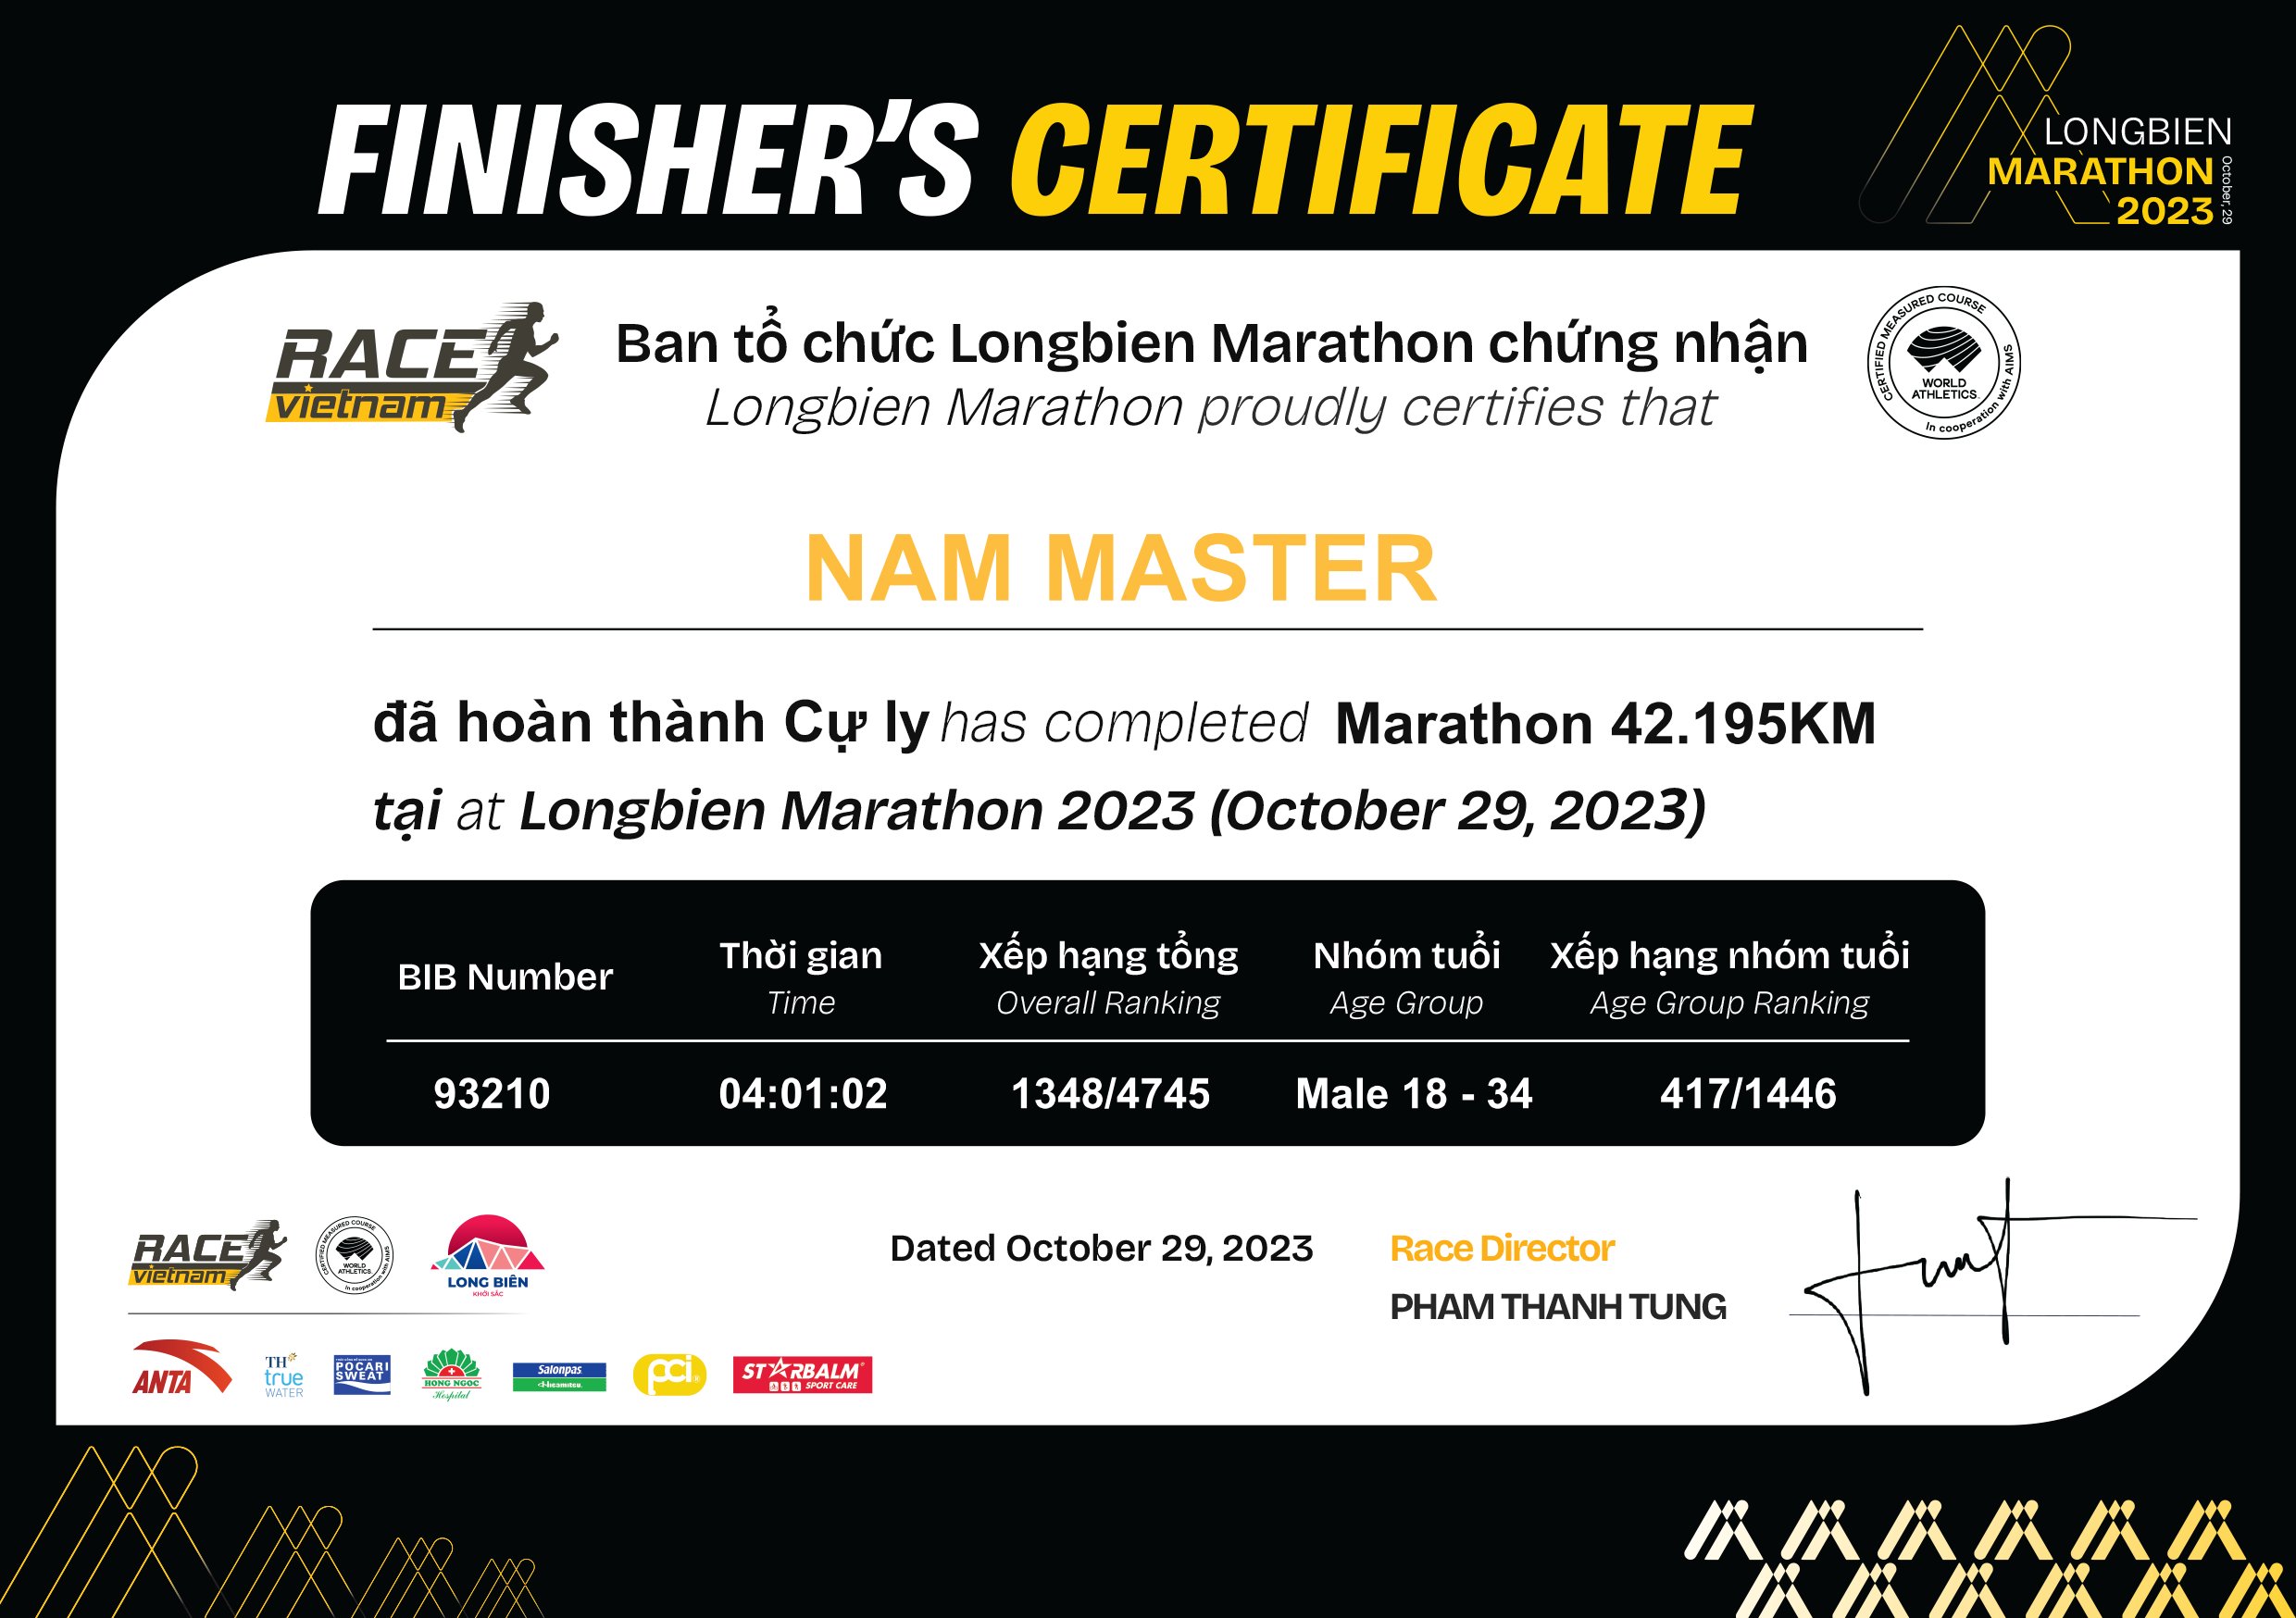 93210 - Nam Master